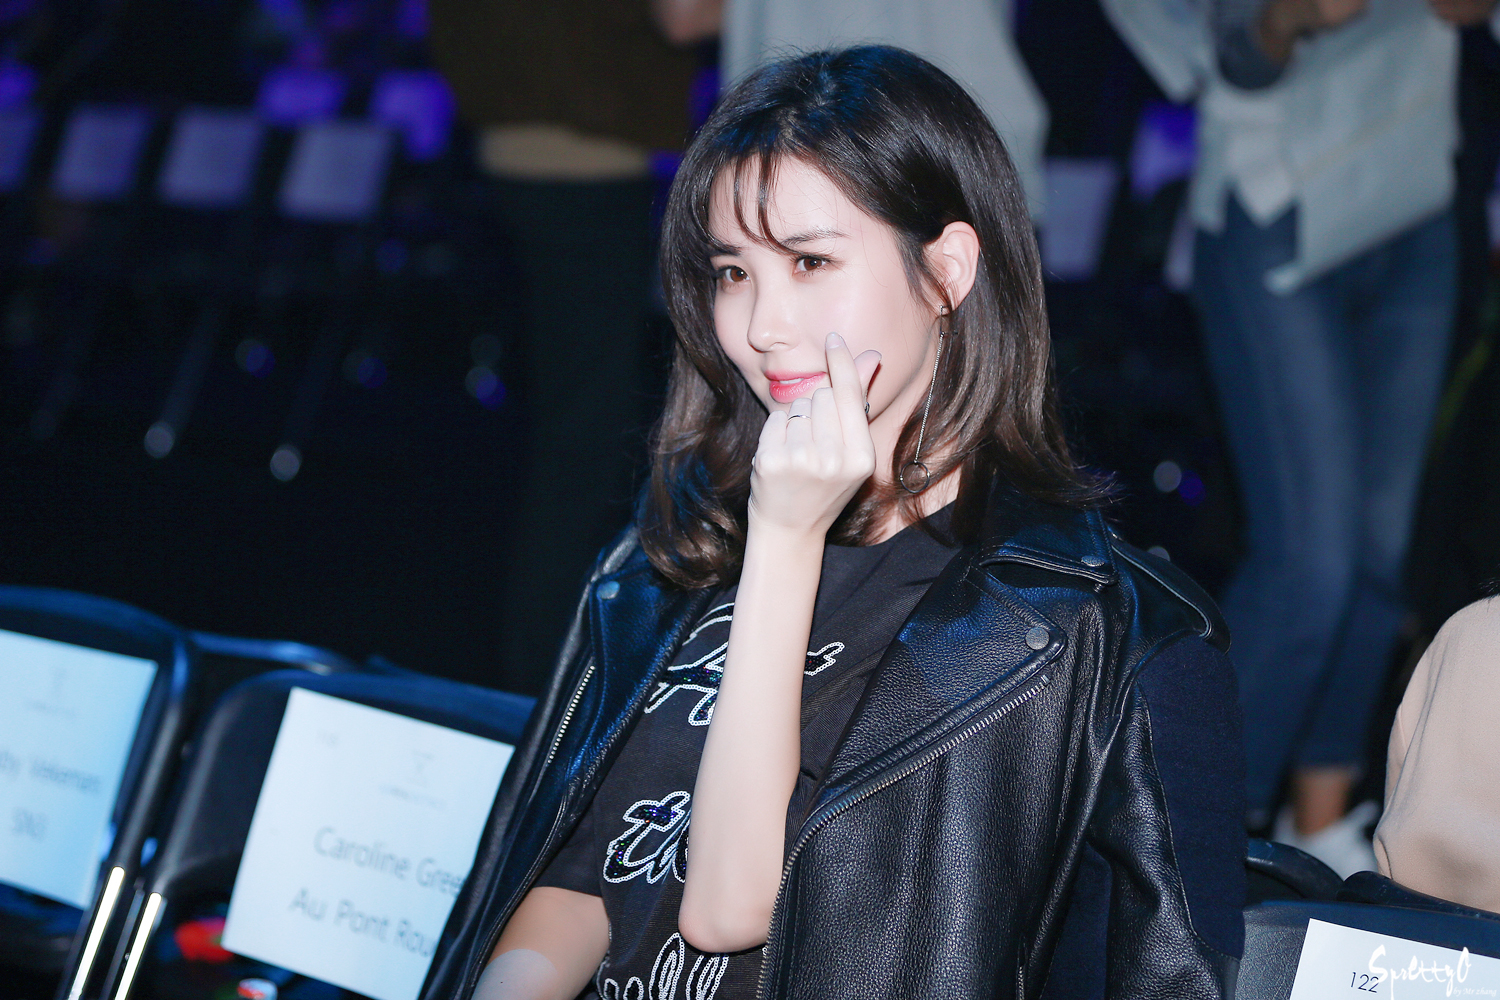 [PIC][21-10-2016]SeoHyun tham dự sự kiện ra mắt BST Xuân - Hè của thương hiệu "SURREAL BUT NICE" trong khuôn khổ "2017 S/S HERA Seoul Fashion Week" vào hôm nay  24128239580A3505257E2B